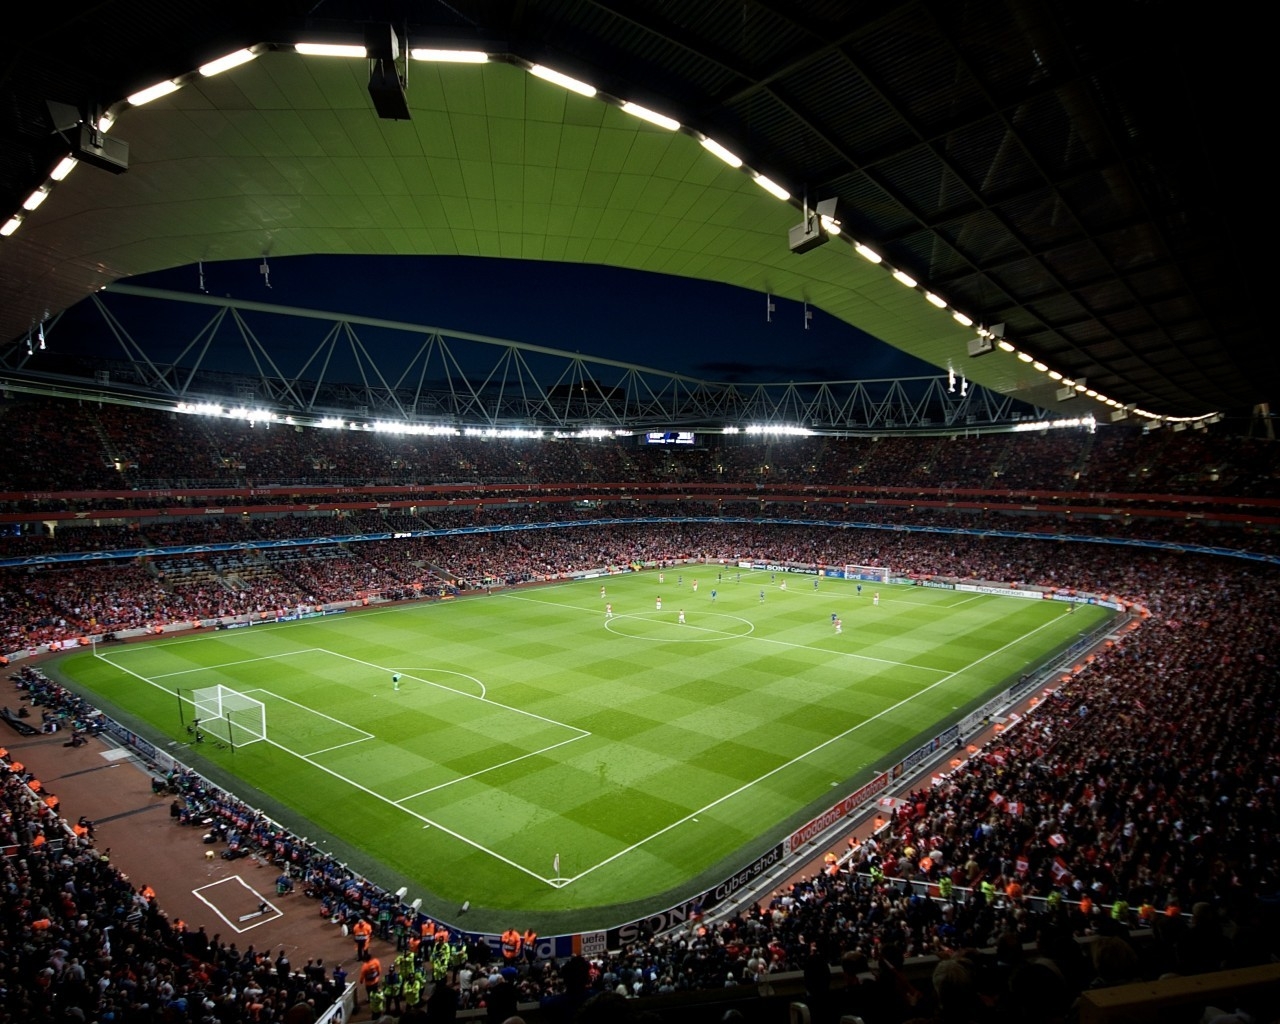 Stadium in Emirates for 1280 x 1024 resolution